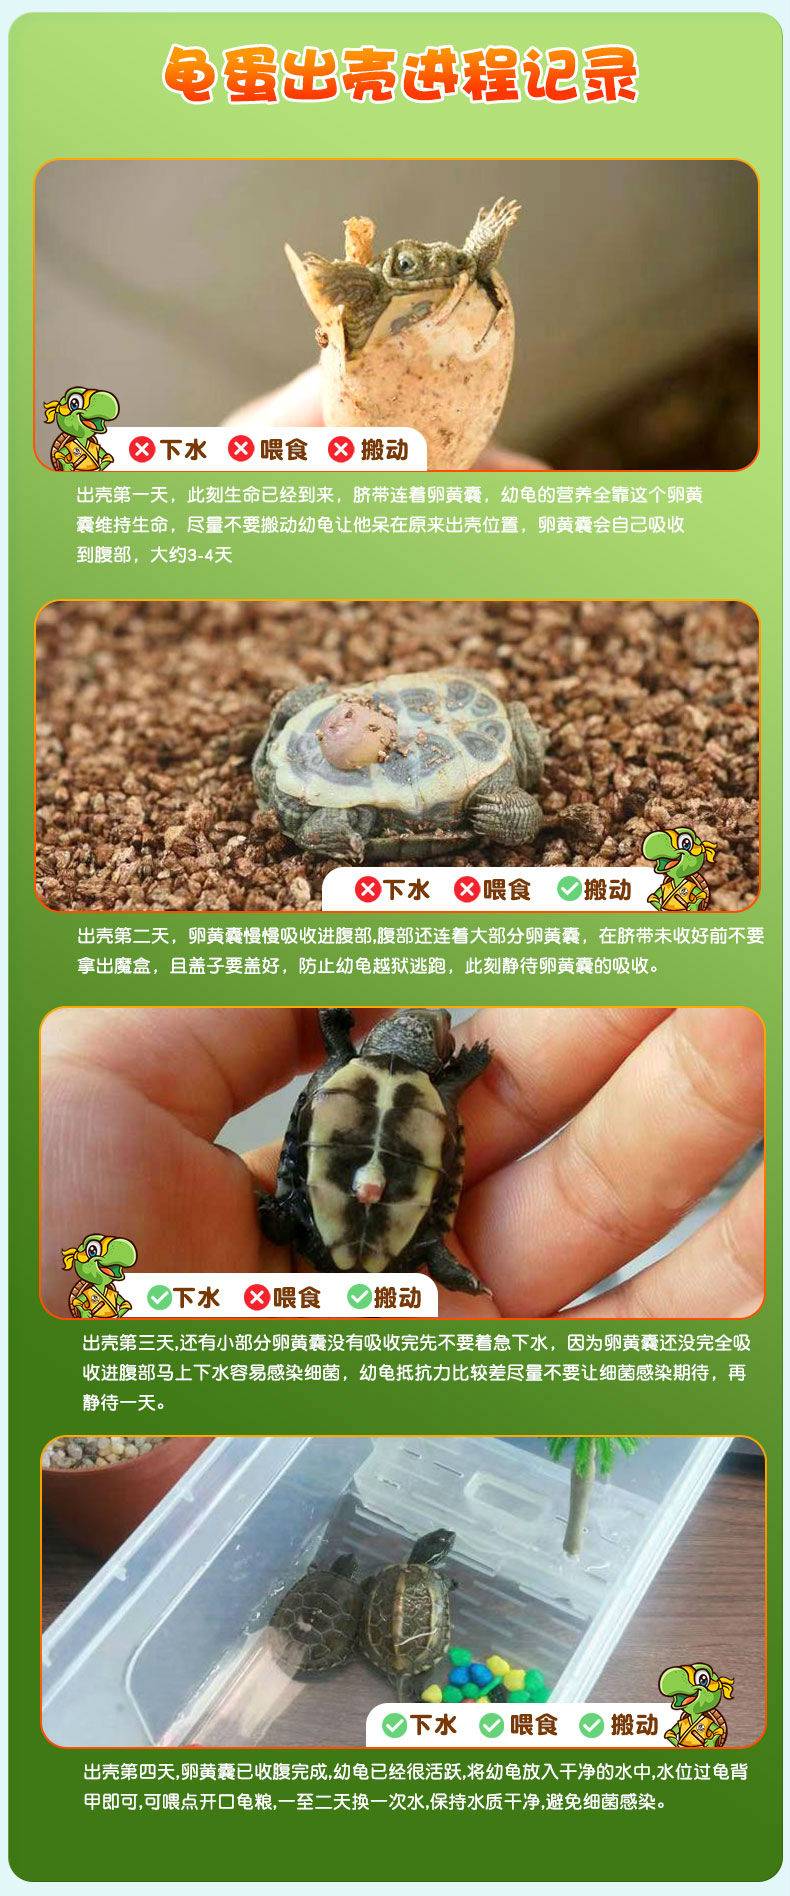 39.9元起抢忍者神龟DIY可孵化乌龟蛋，让孩子体验孵化的乐趣  送给孩子最好的儿童六一节礼物！